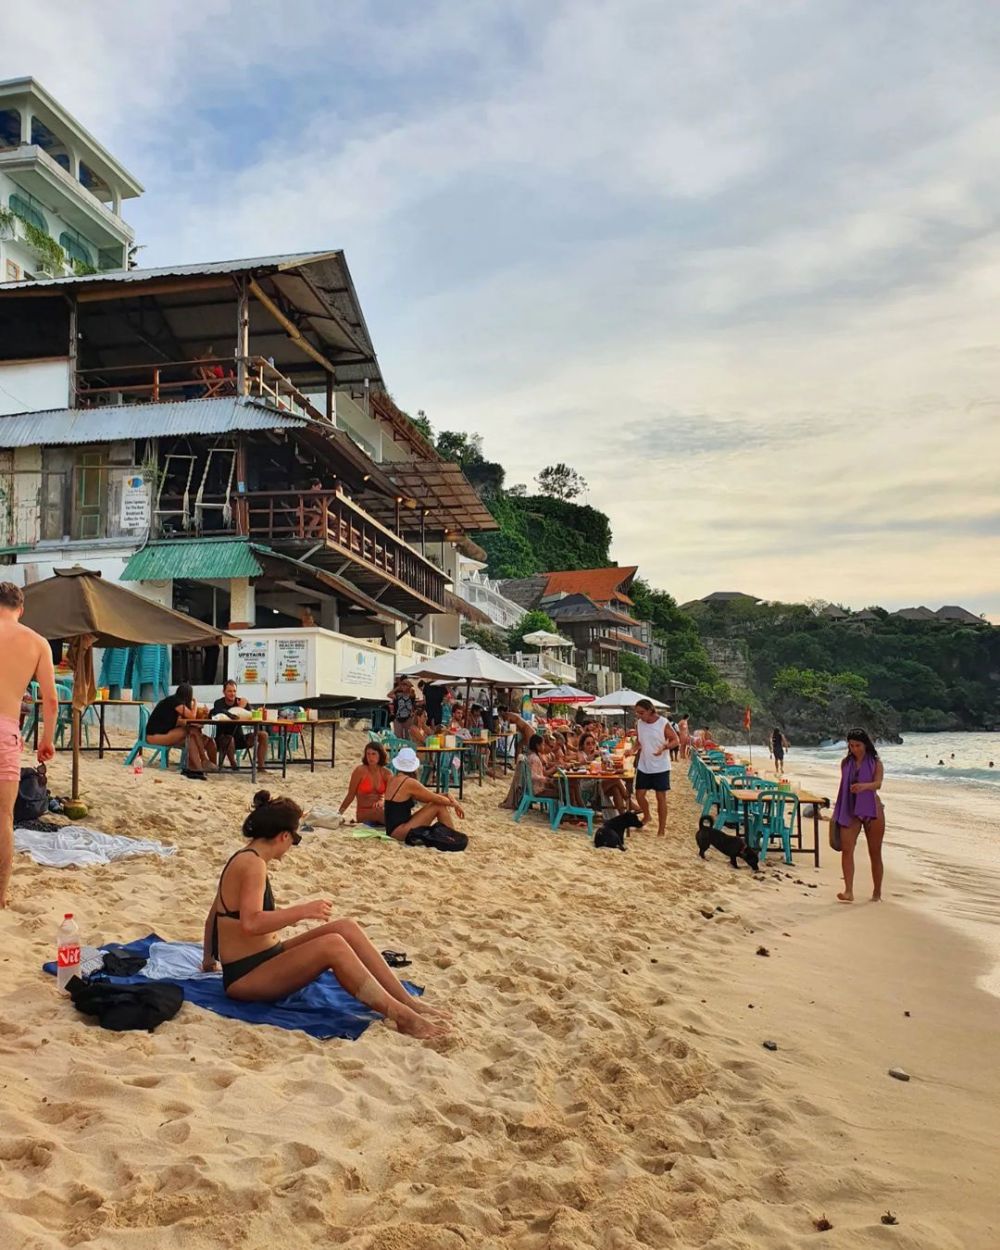 7 Pantai Pasir Putih di Bali Selatan Selain Nusa Dua